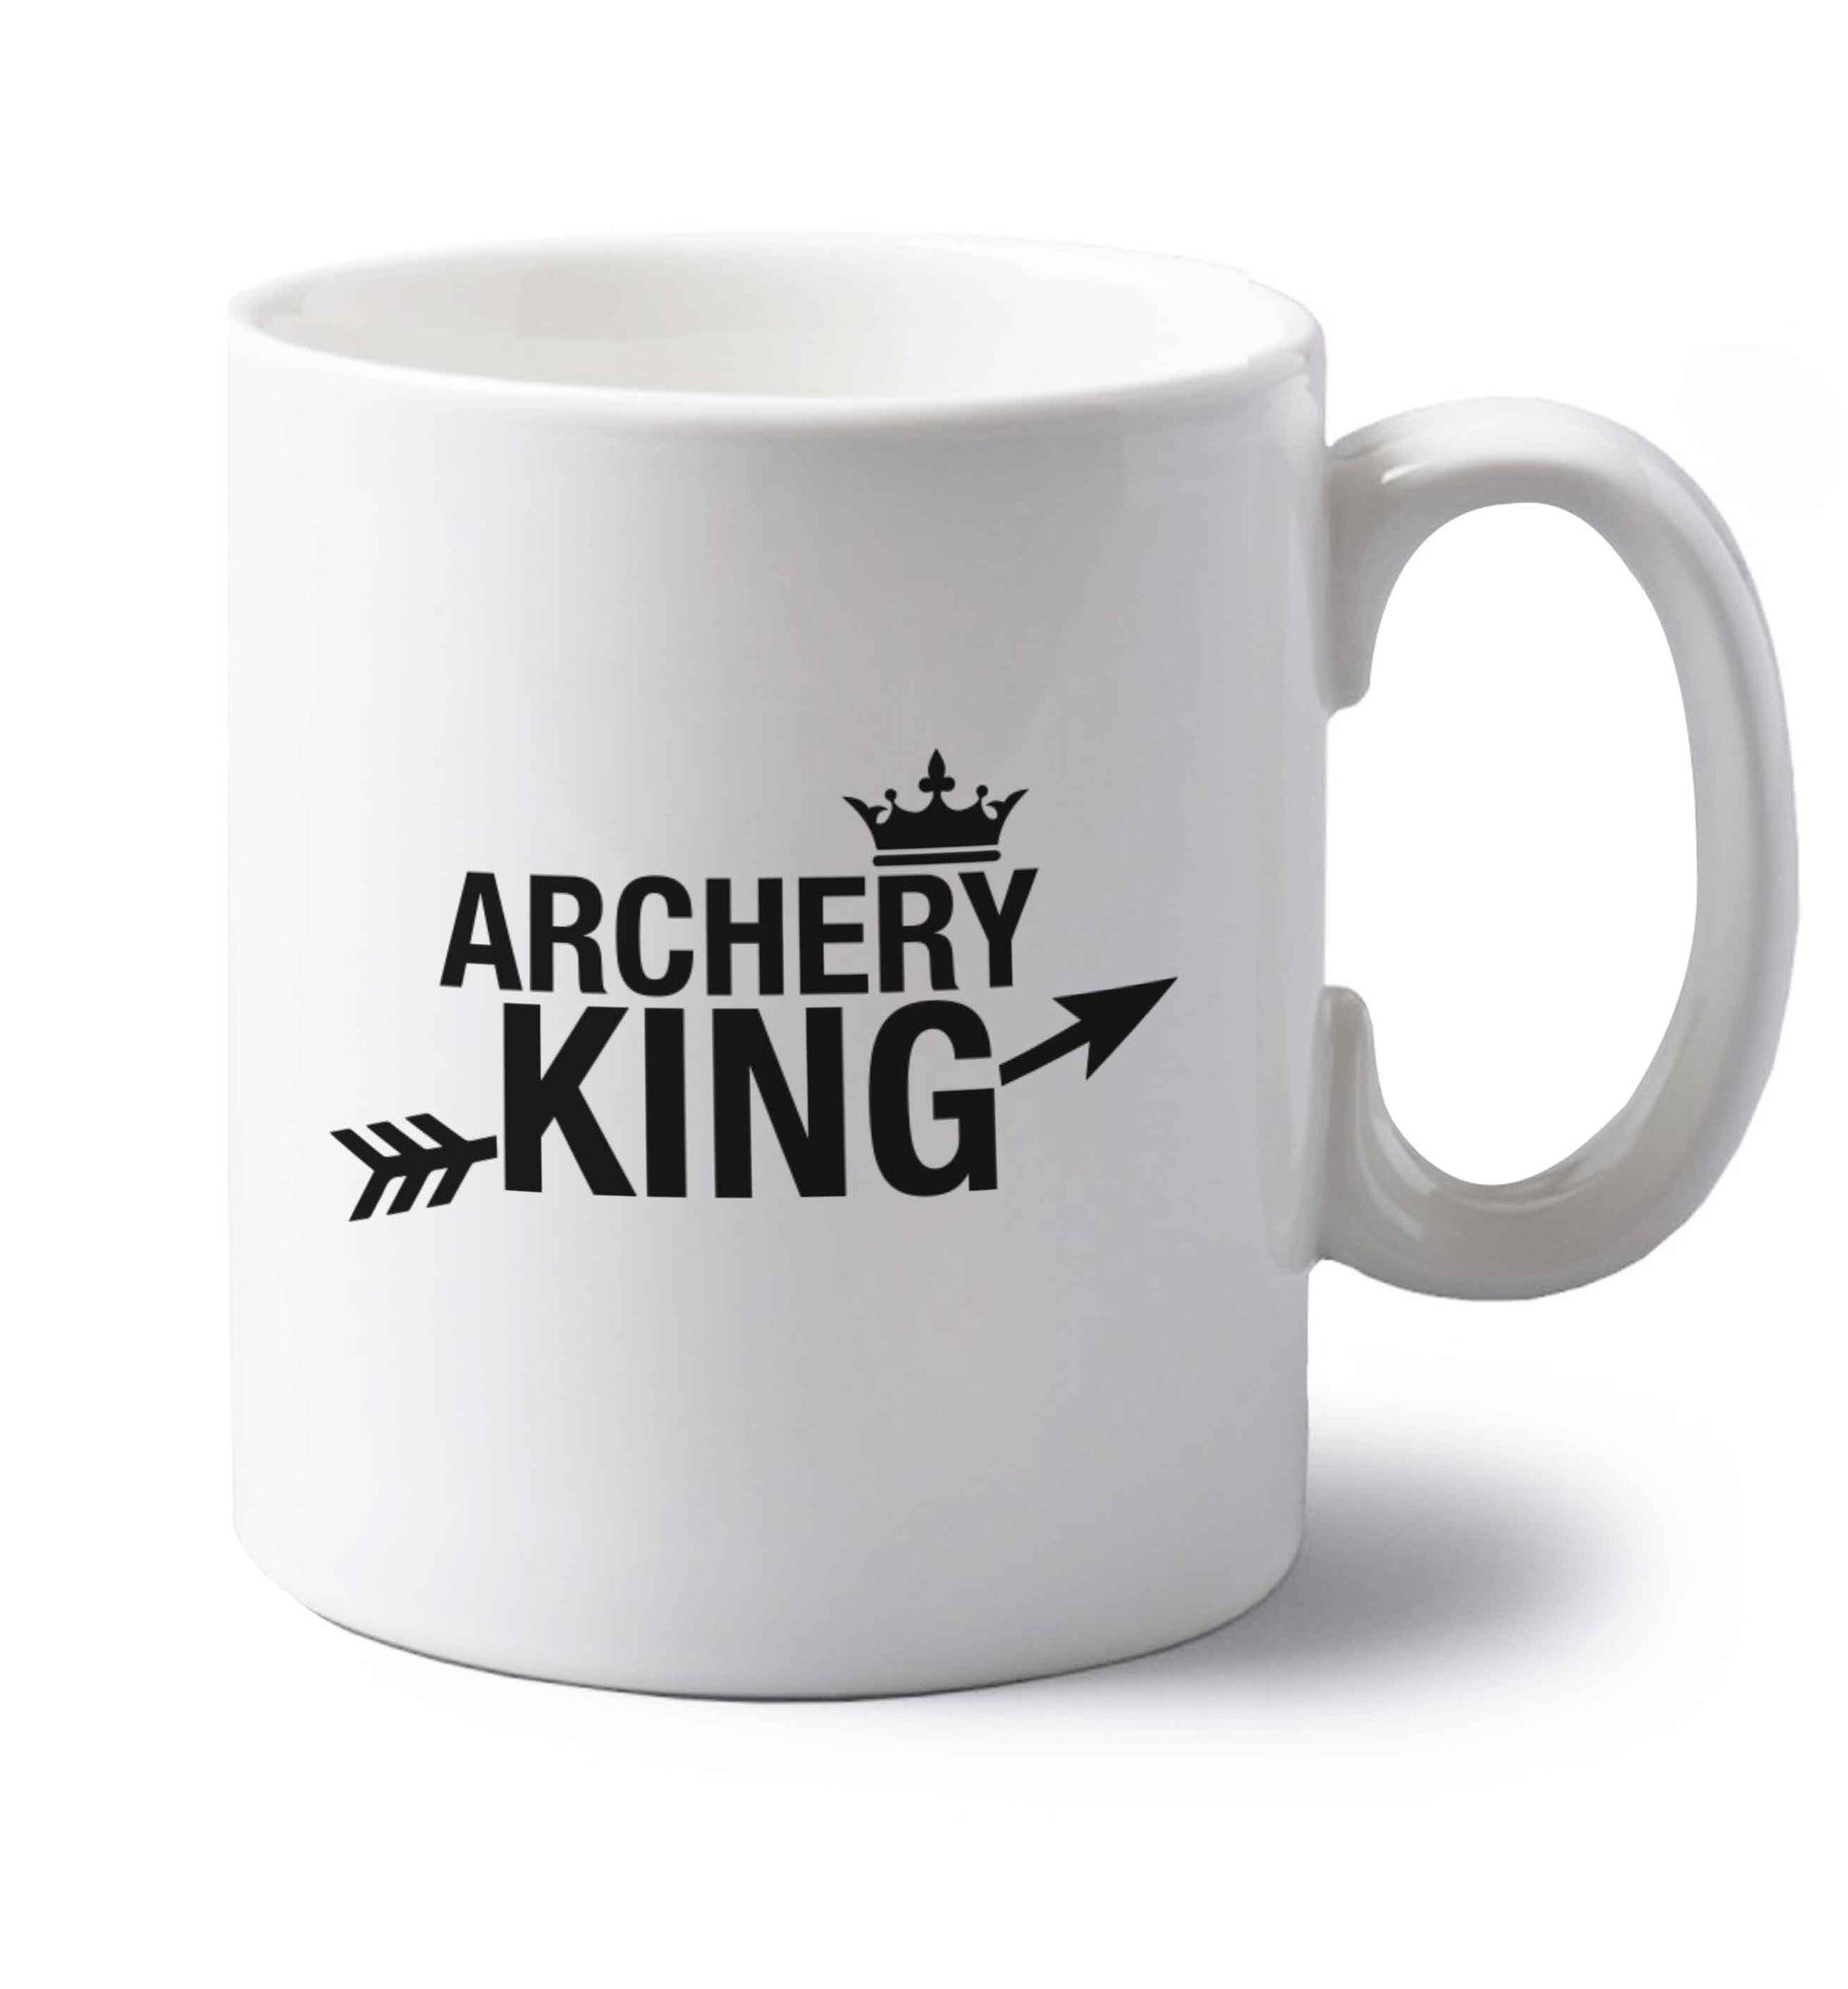 Archery king left handed white ceramic mug 